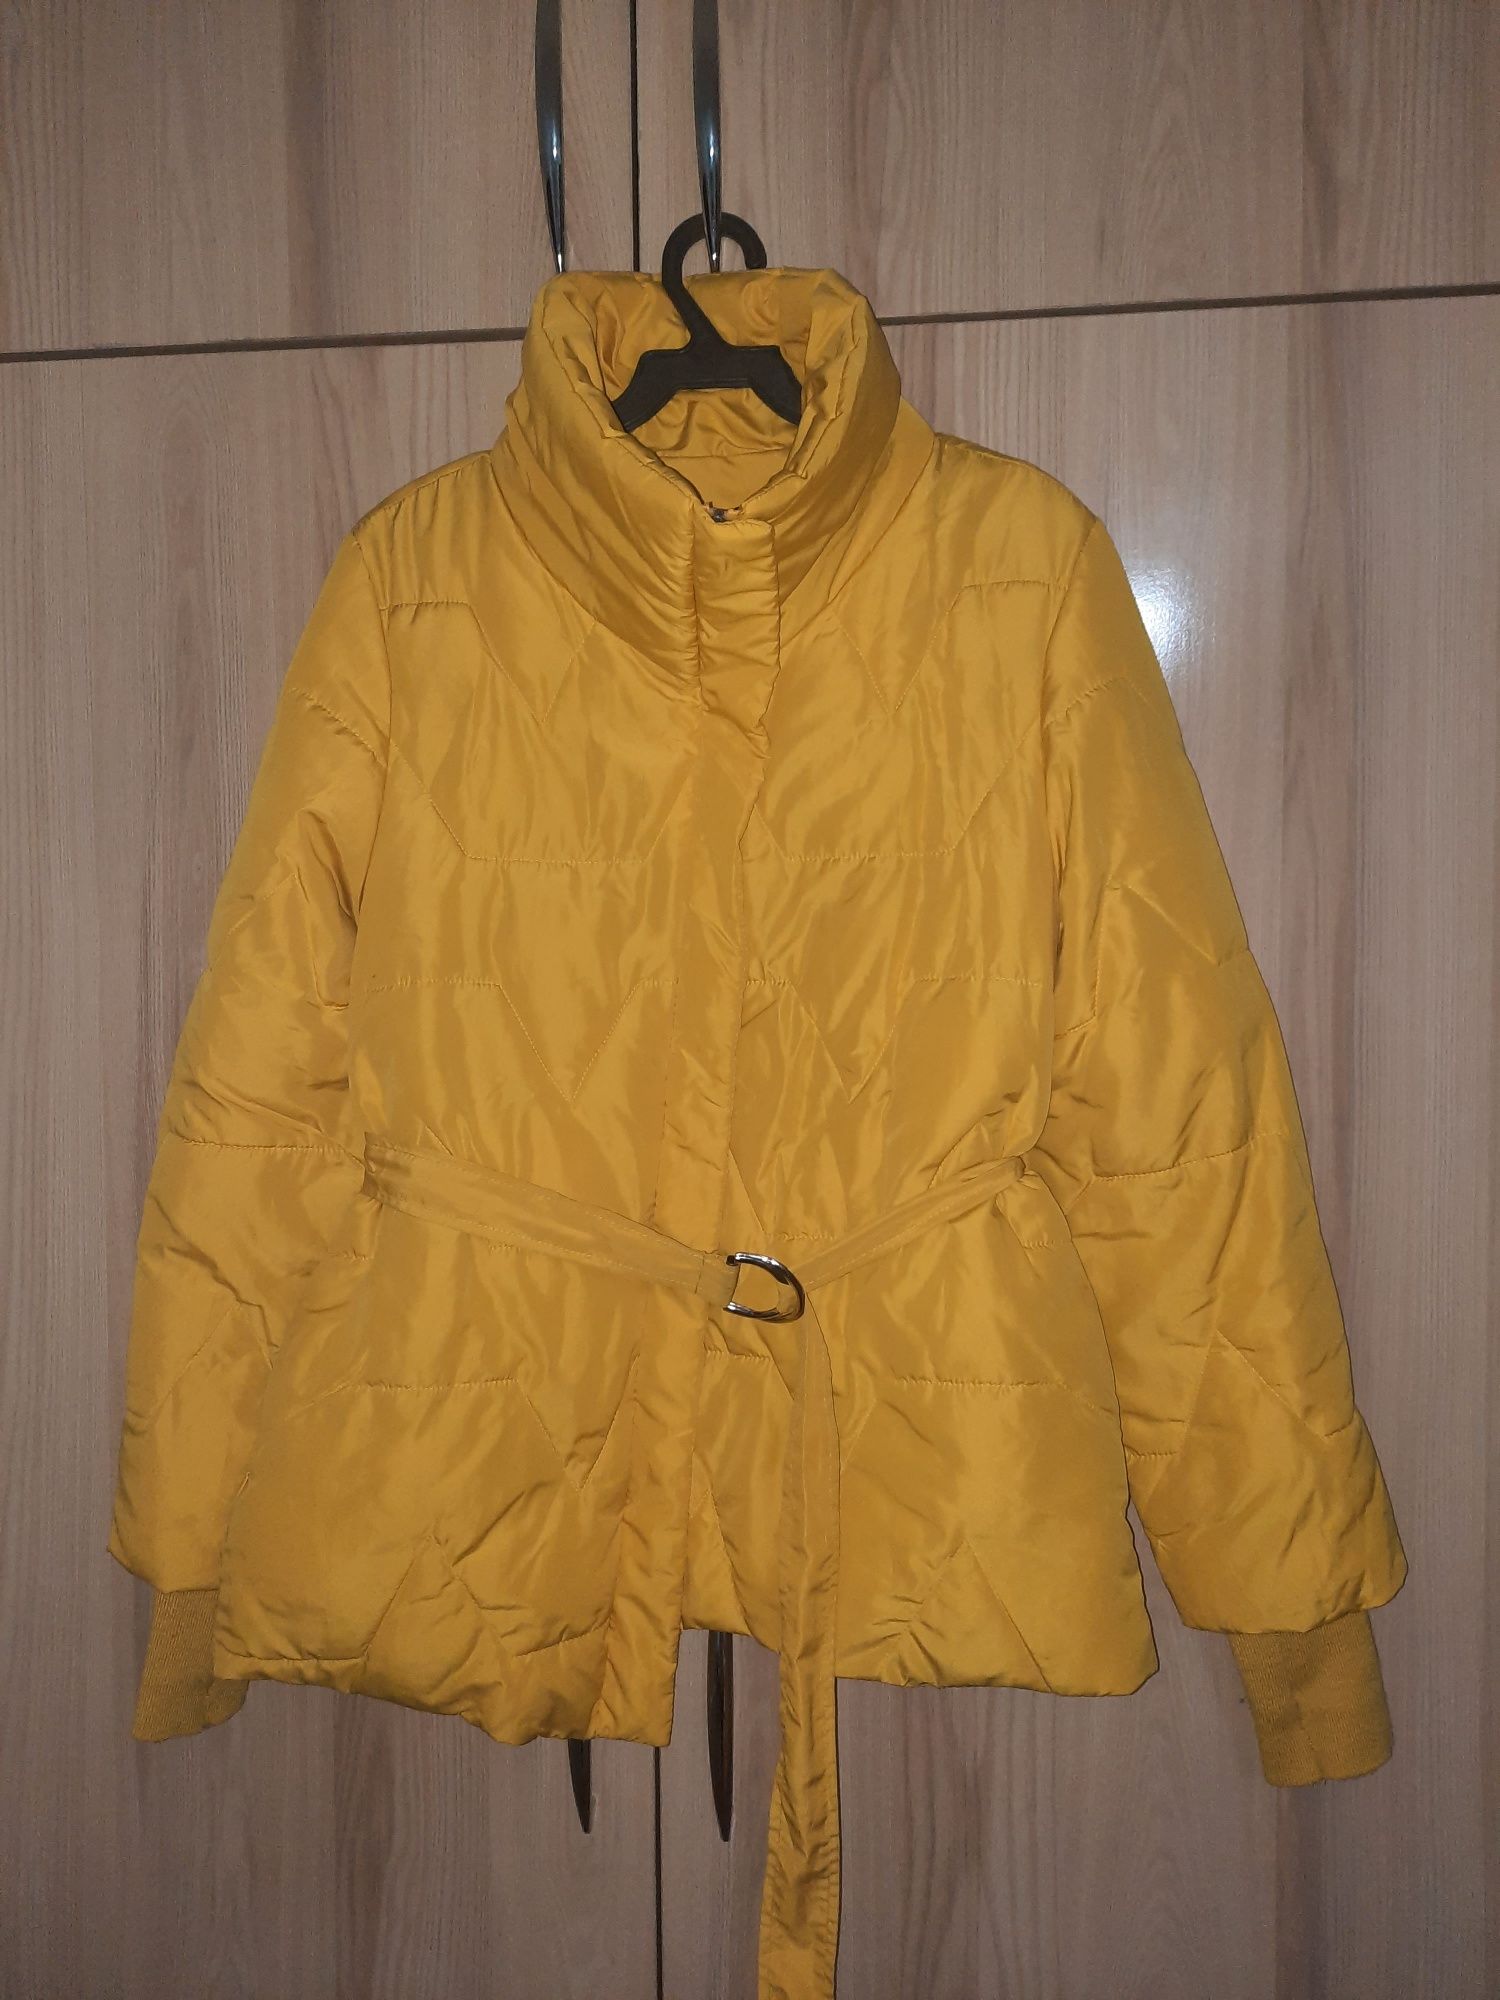 Куртка жёлтого цвета в отличном состоянии